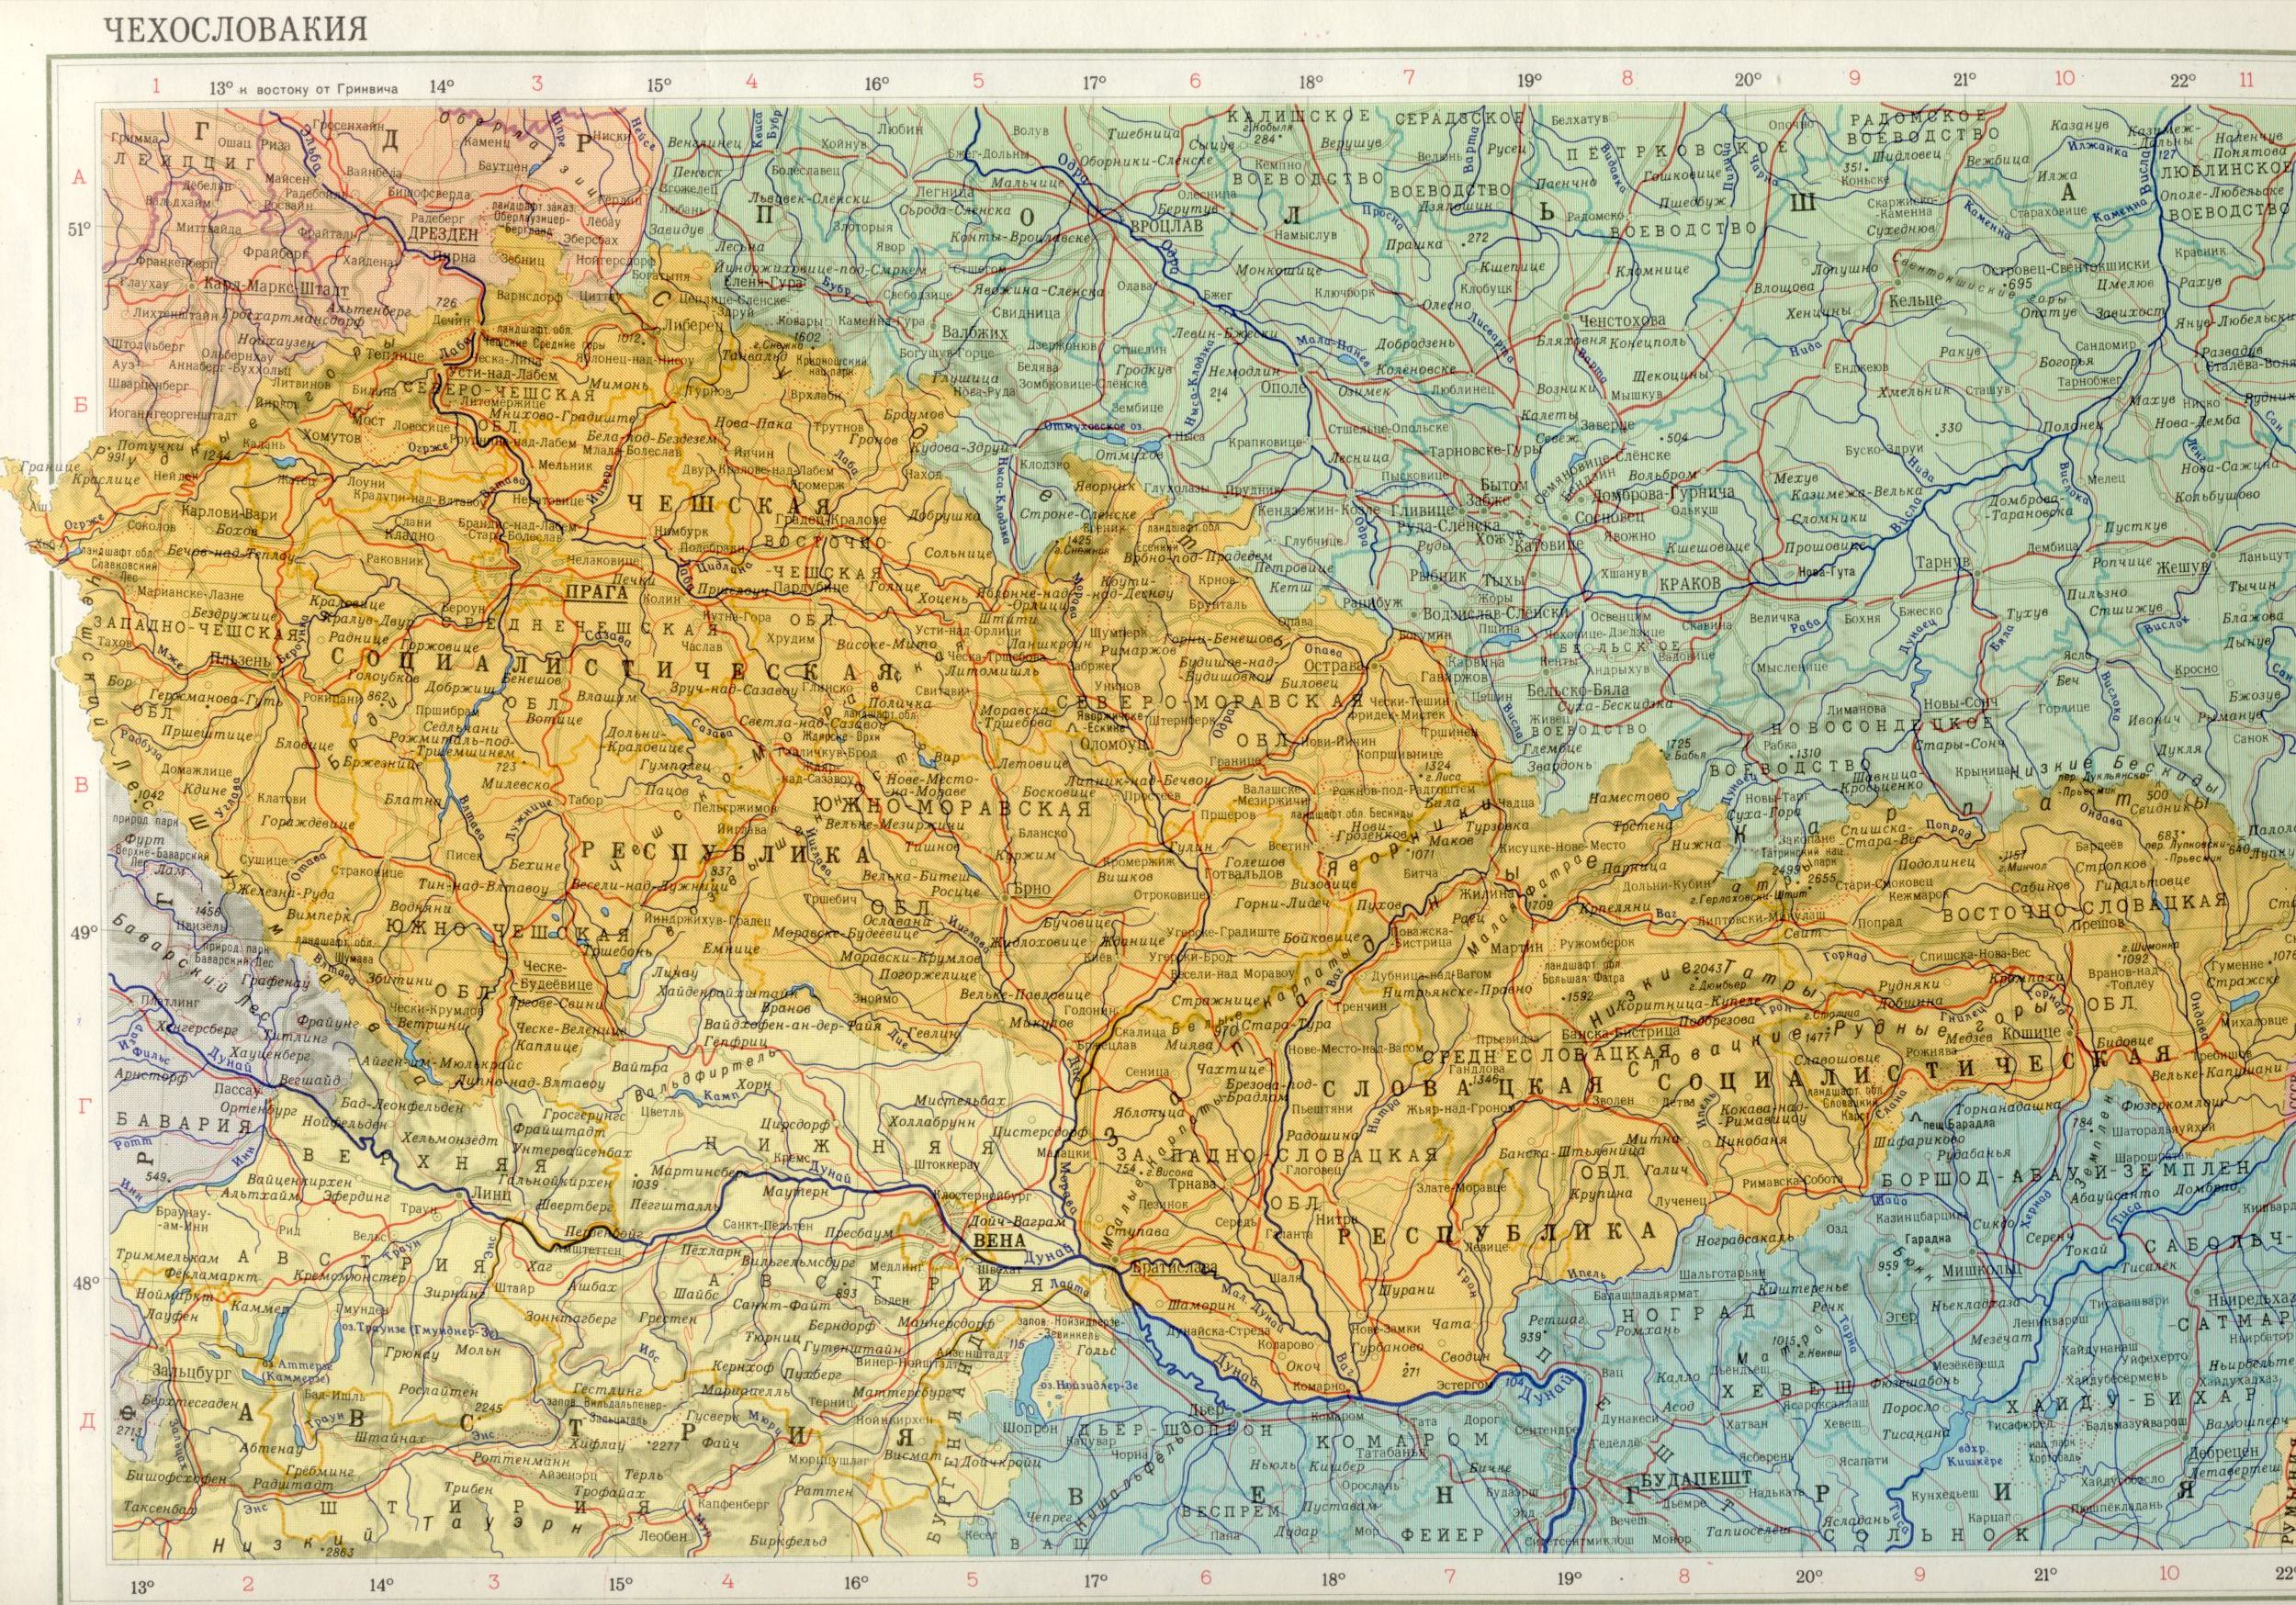 Карта Чехословакии 1988 1см=25км. Скачать бесплатно карты Европы политические